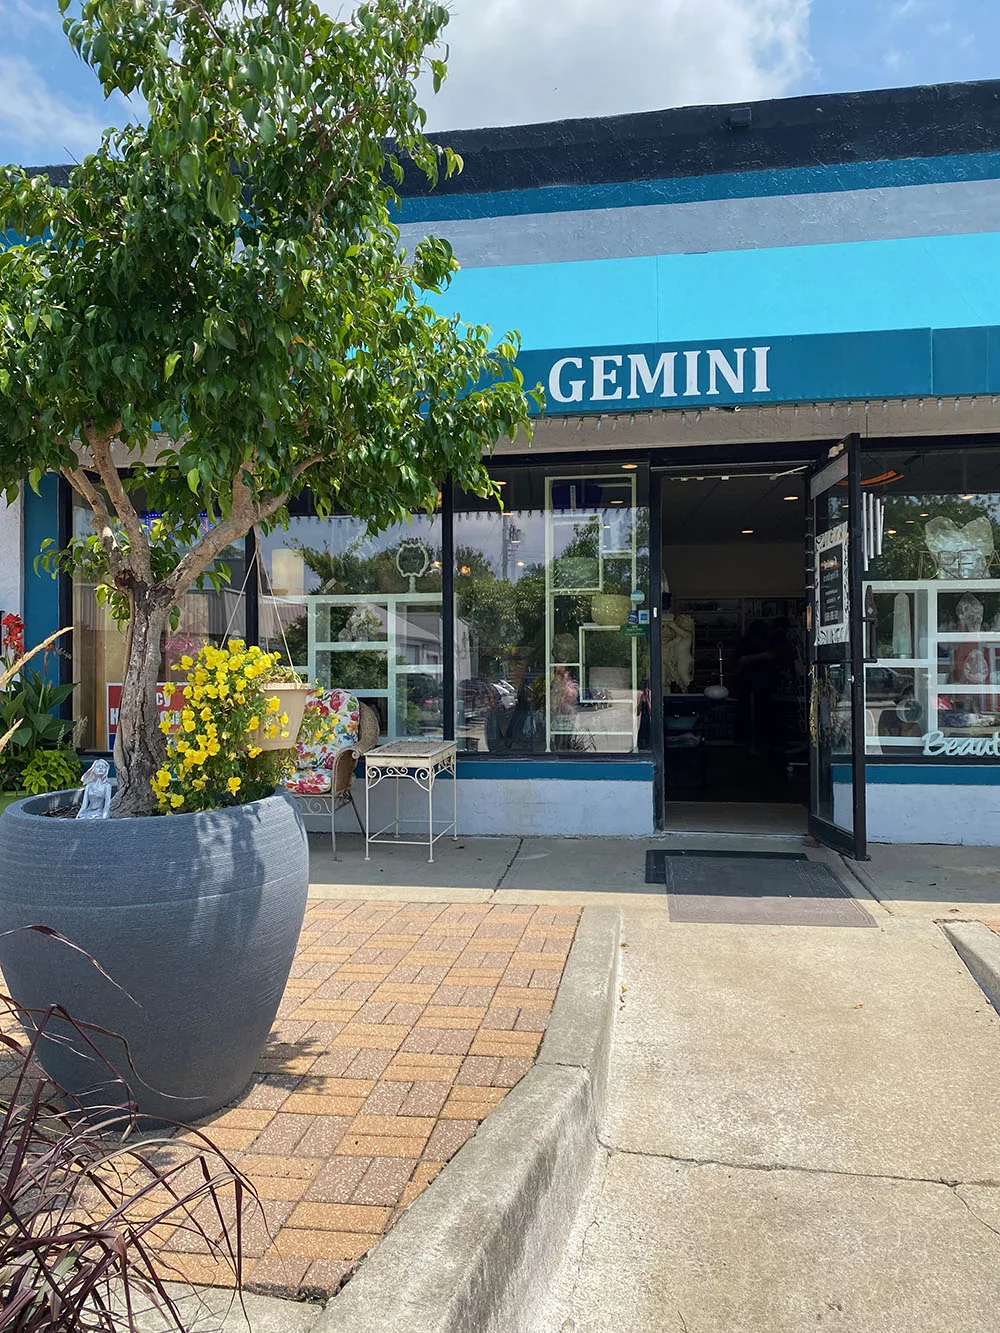 Exterior of Gemini in Merriam, Kansas